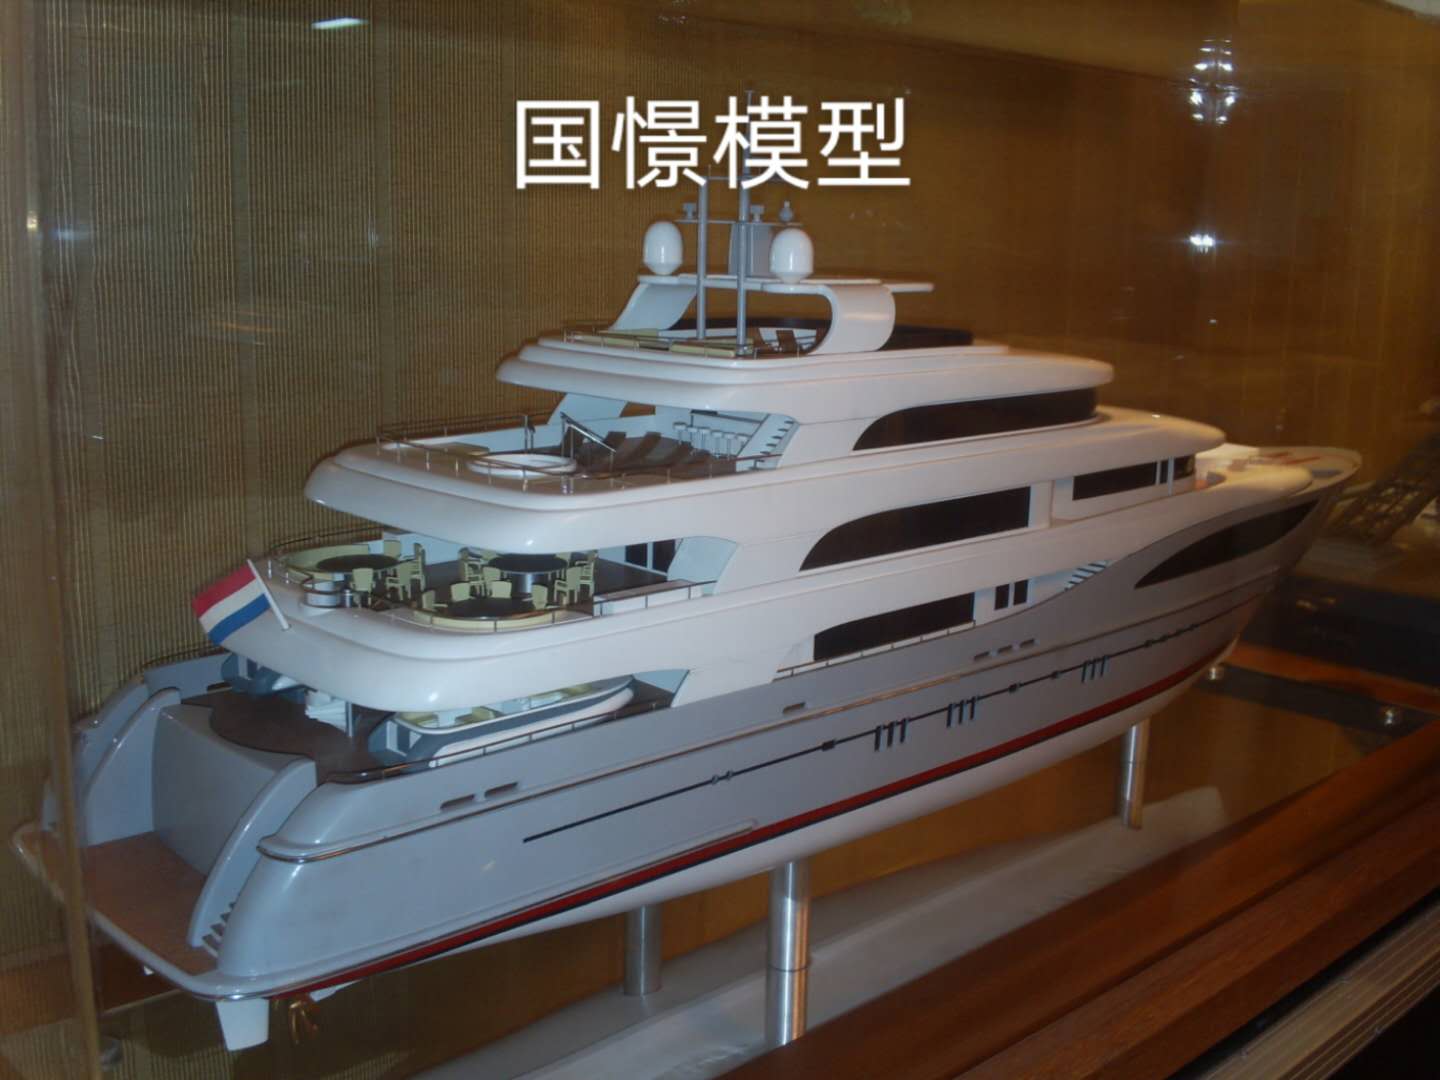 冷水江市船舶模型